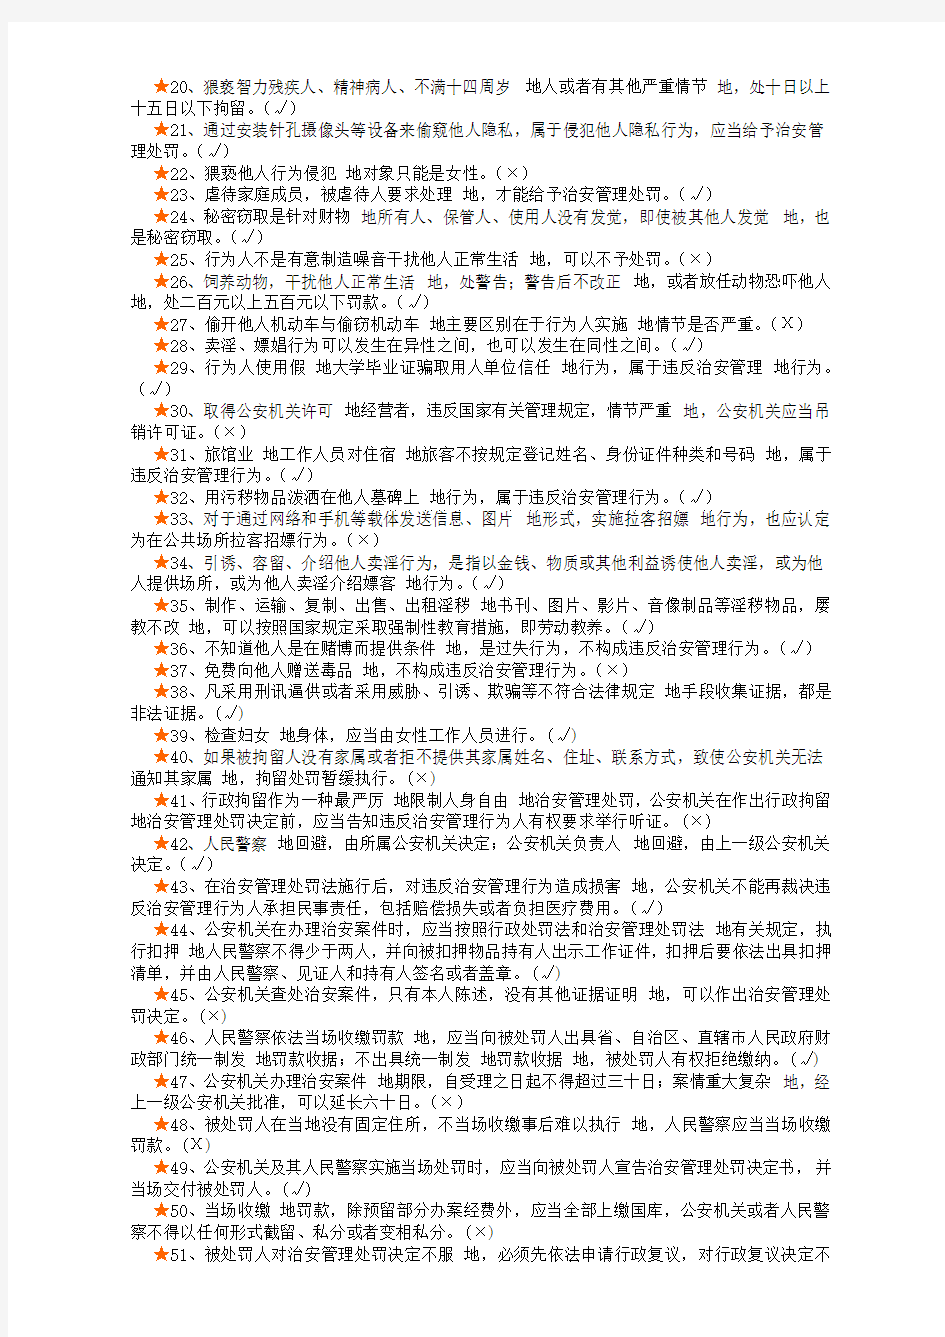 【2019年整理】《中华人民共和国治安管理处罚法》(题库)